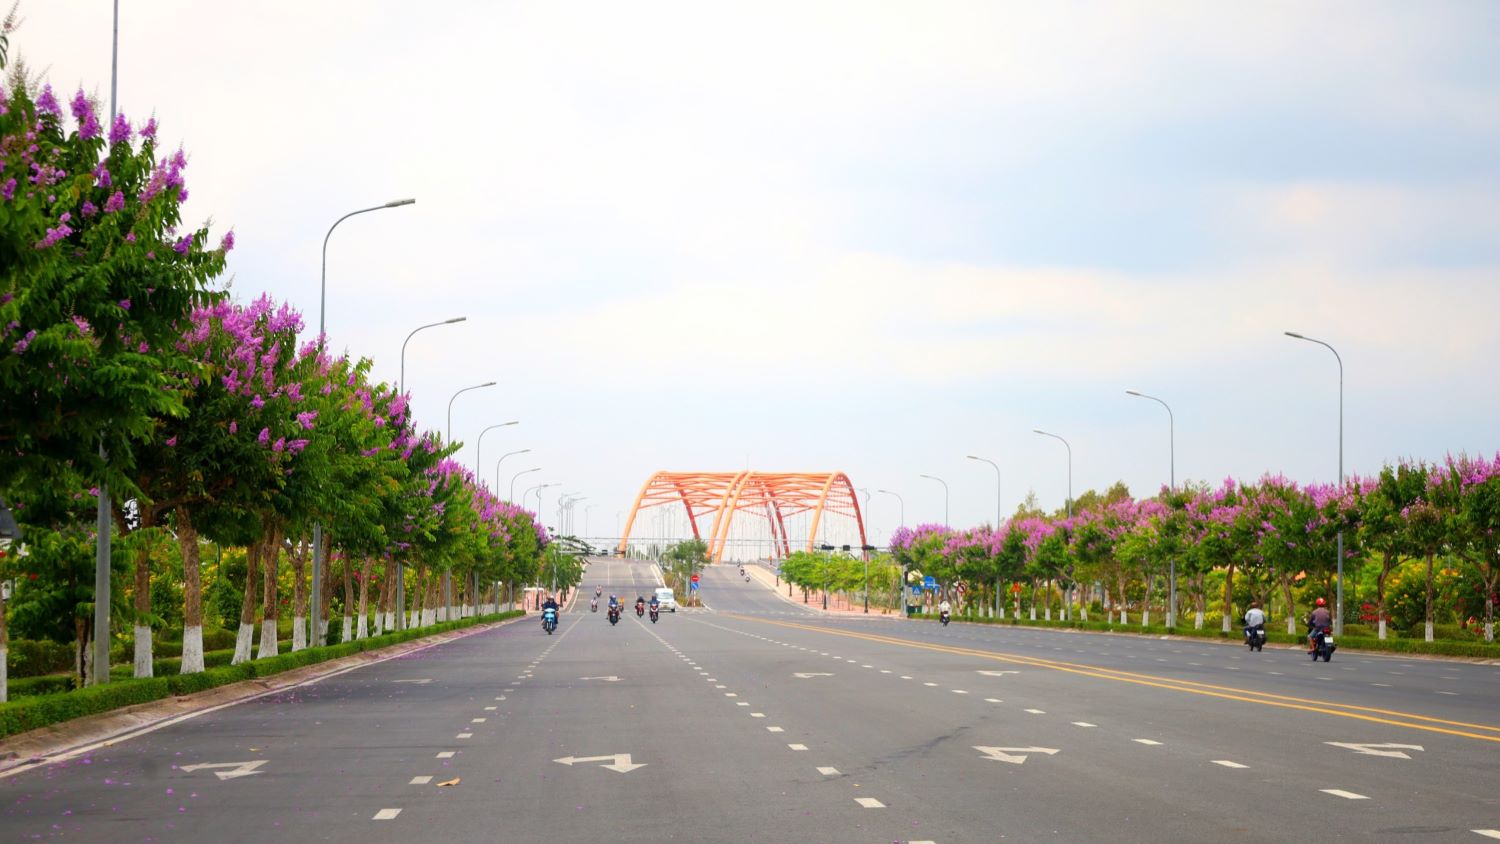 Trên tuyến đường Võ Văn Kiệt dẫn vào Trung tâm Hành chính tỉnh Vĩnh Long, giờ đây có thêm sắc tím mộng mơ hai bên đường, tạo nên cung đường tuyệt đẹp gây thương nhớ tại miền Tây.